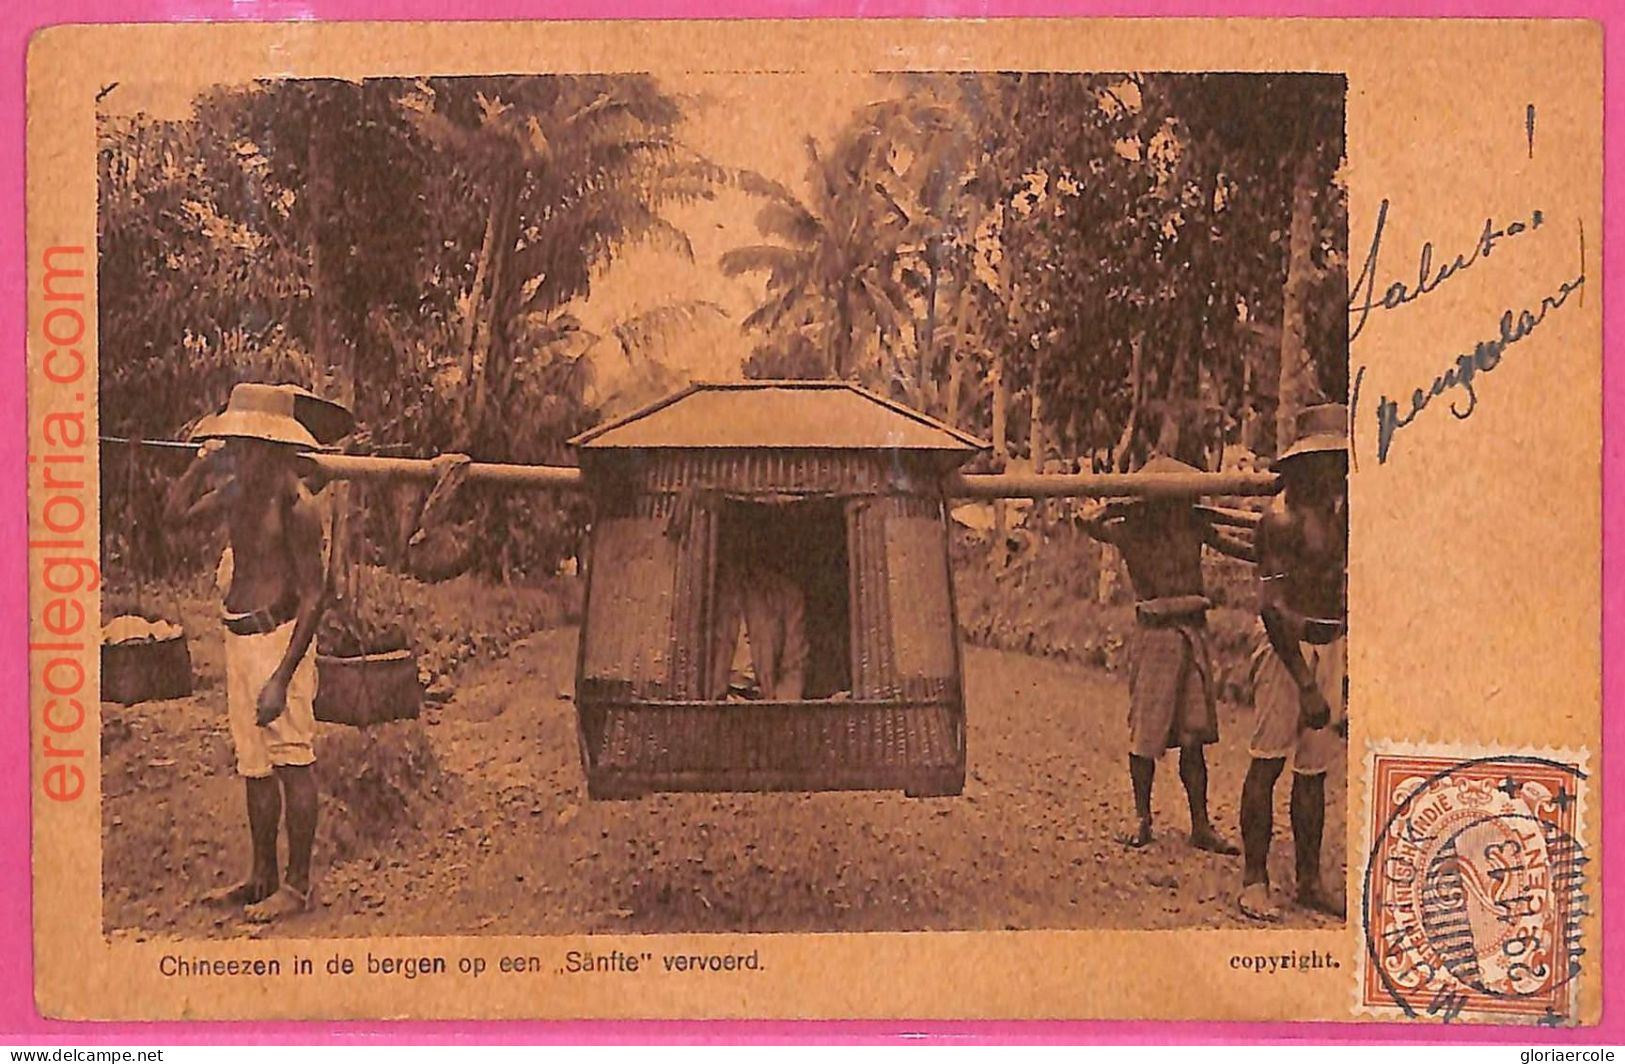 Af9001 - INDONESIA - Vintage POSTCARD - Ethnic - 1913 - Asia